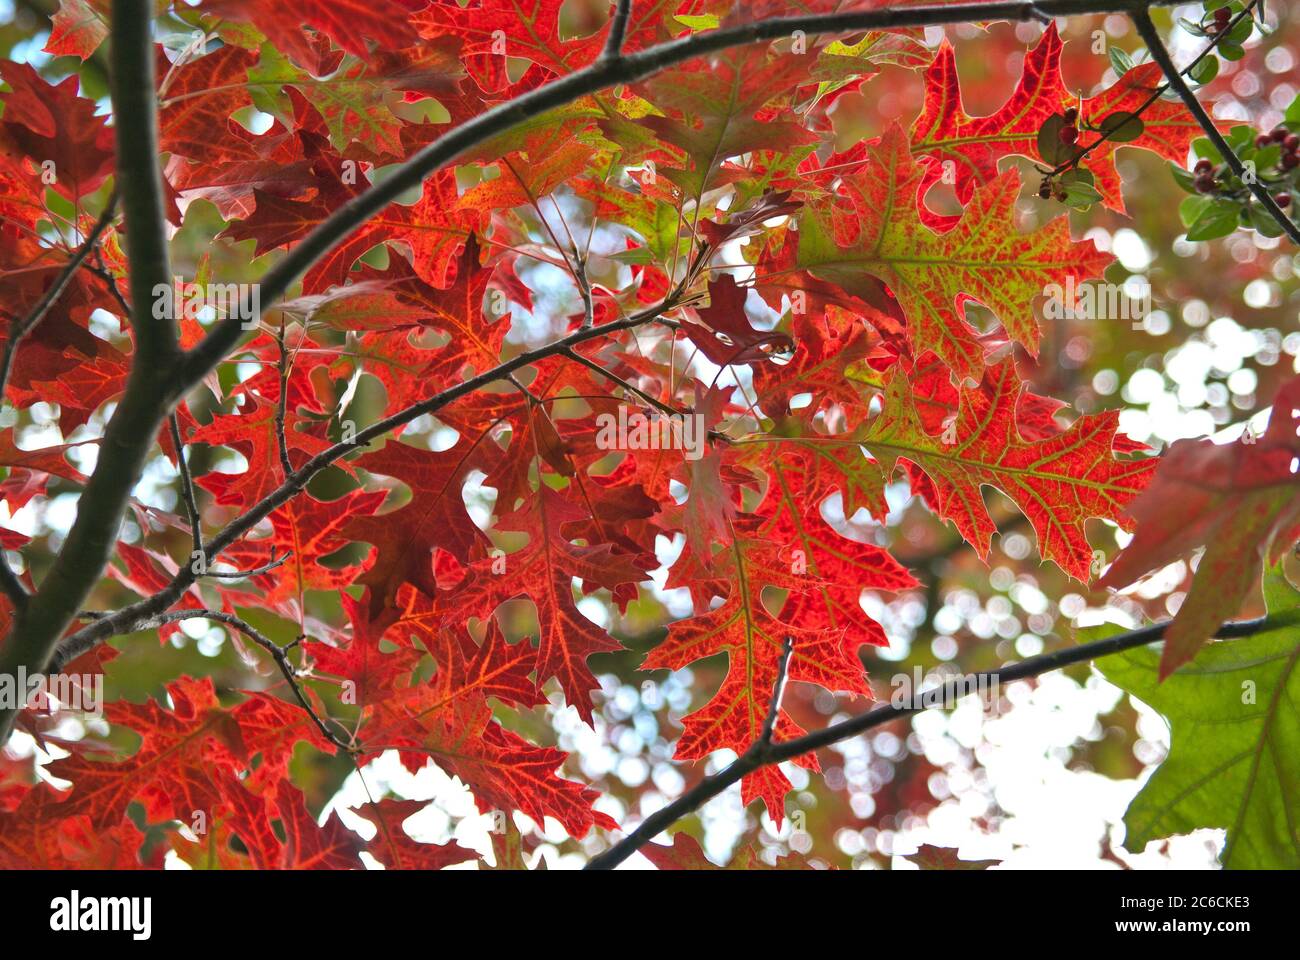 Scharlach-Eiche, Quercus coccinea, Scarlet Oak, Quercus coccinea Stock Photo